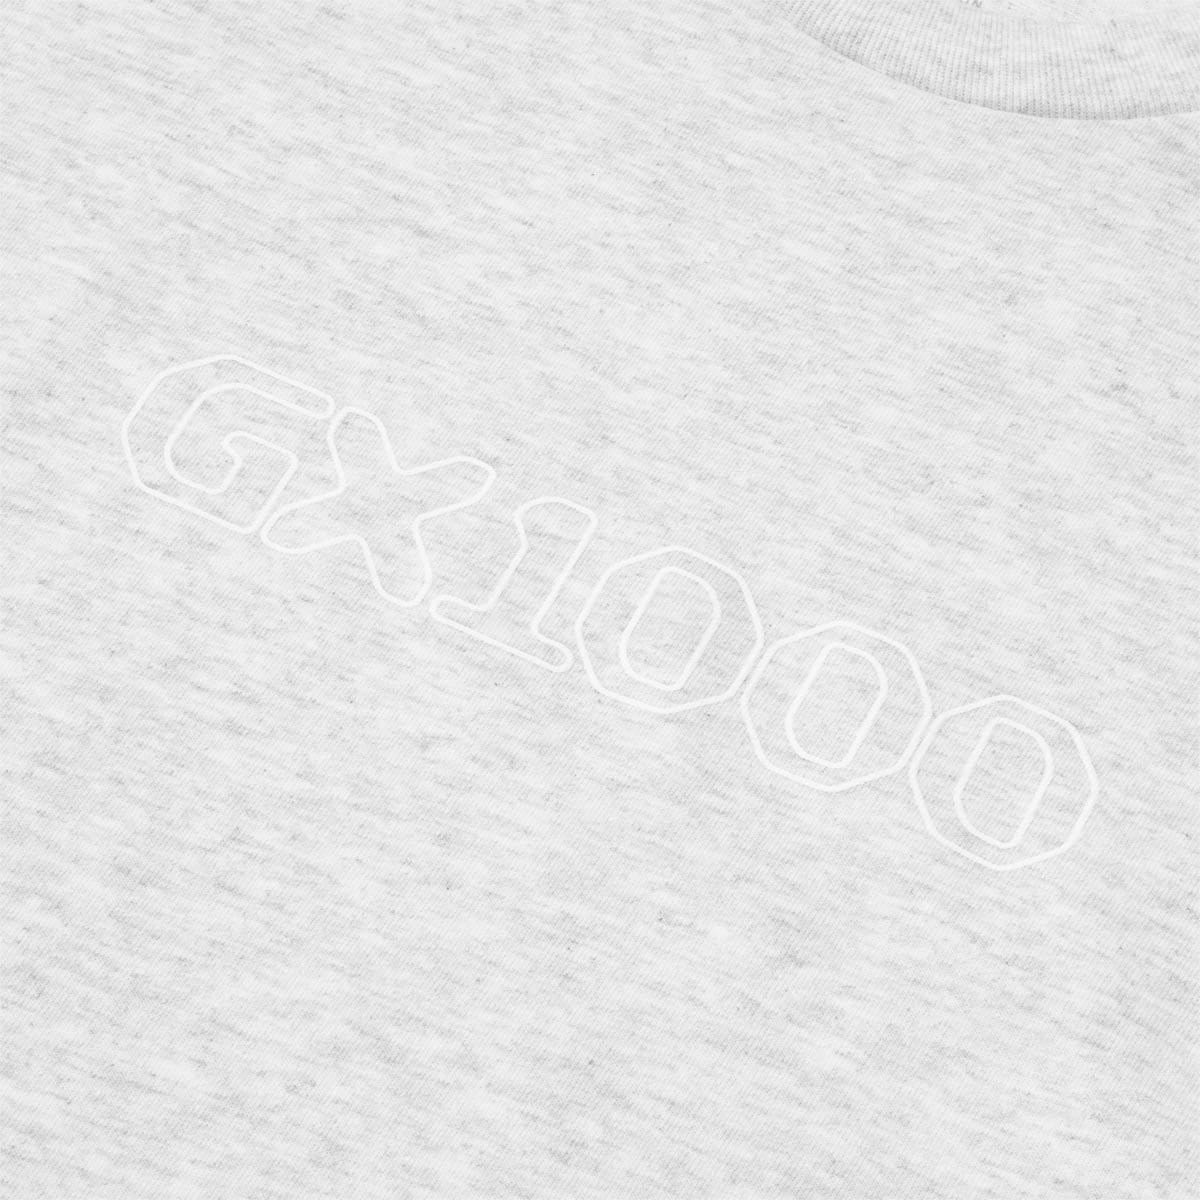 GX1000 T-Shirts OG LOGO TEE